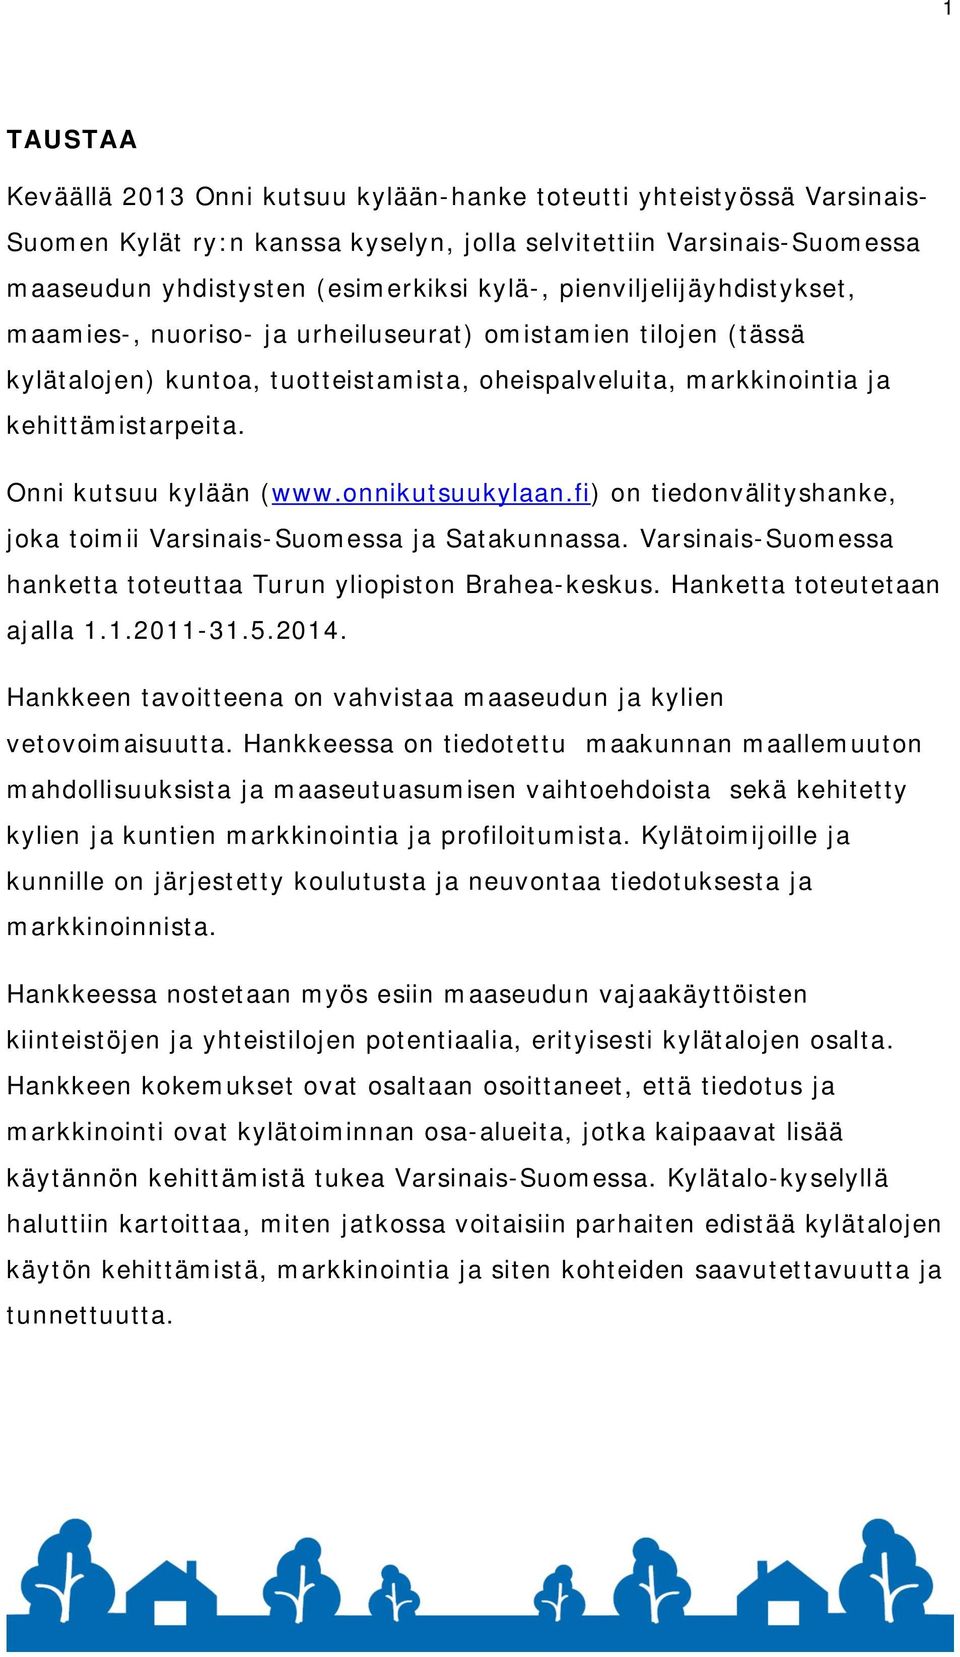 Onni kutsuu kylään (www.onnikutsuukylaan.fi) on tiedonvälityshanke, joka toimii Varsinais-Suomessa ja Satakunnassa. Varsinais-Suomessa hanketta toteuttaa Turun yliopiston Brahea-keskus.